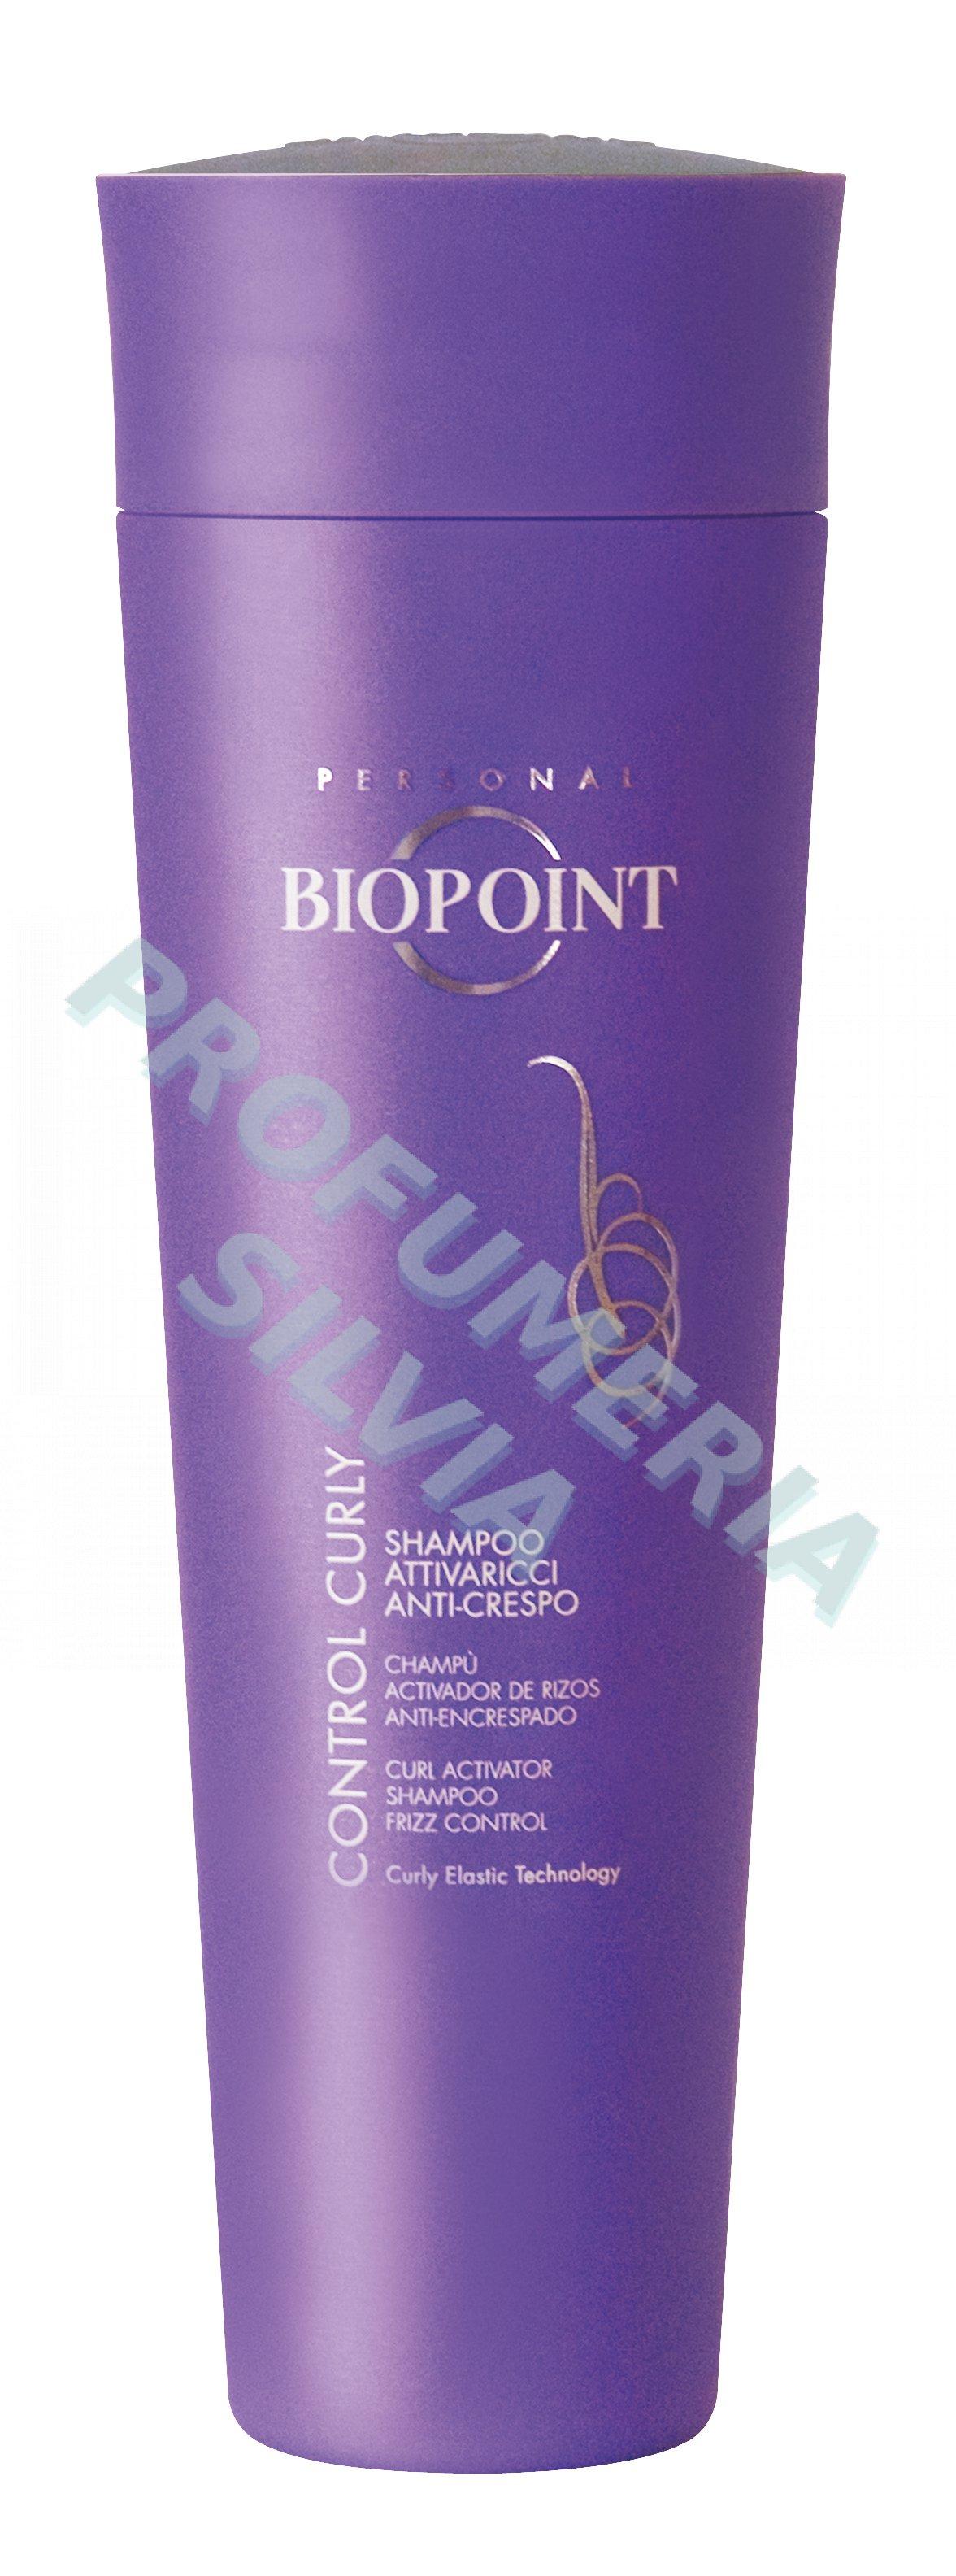 Foto control de attivaricci curly shampoo 200ml Biopoint foto 826206